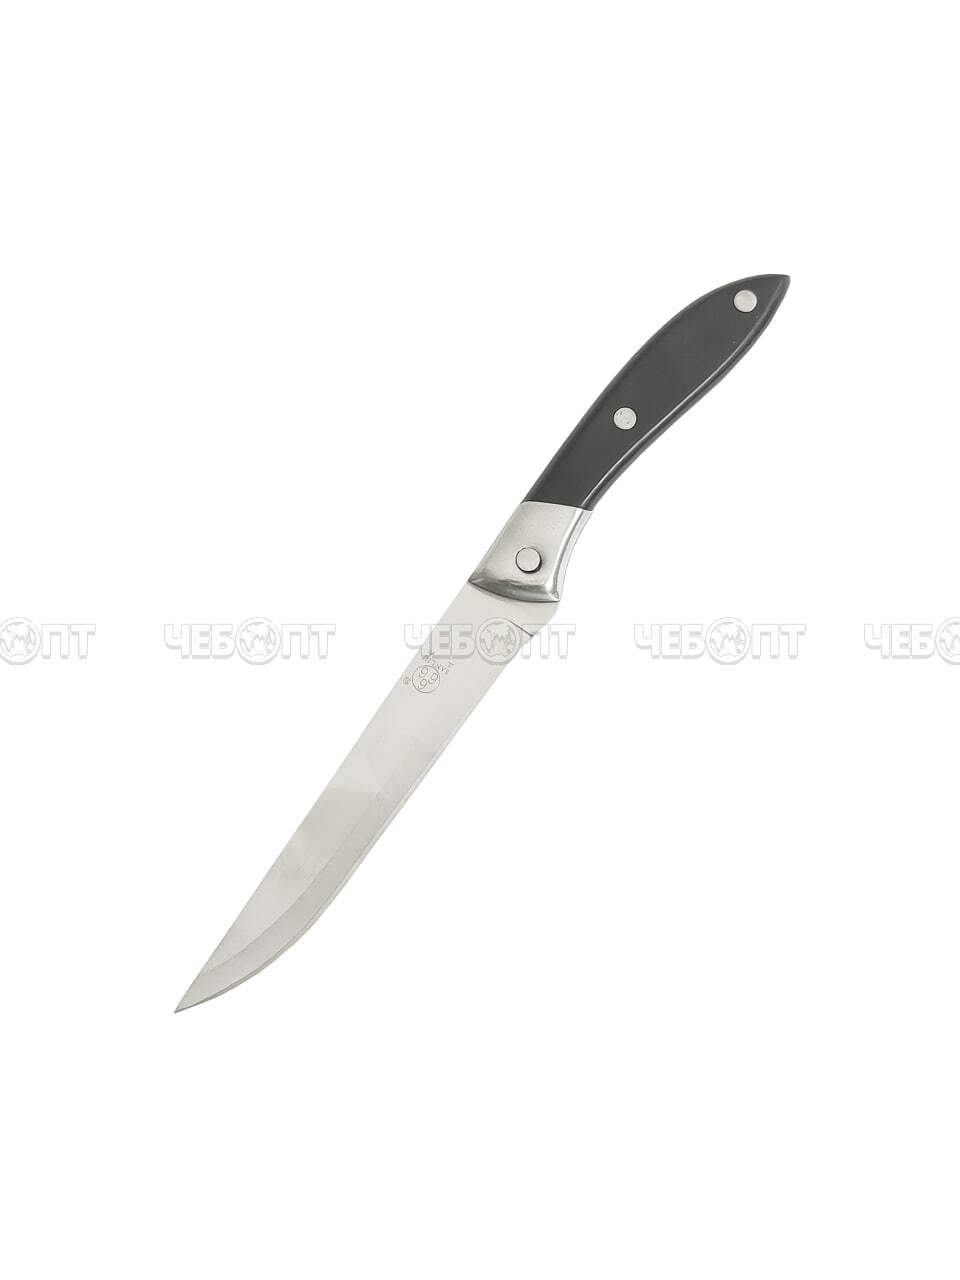 Нож кухонный универсальный 11 см Sanliu 666 из нержавеющей стали с пластиковой ручкой арт. 26001 $ [250] GOODSEE. ЧЕБОПТ.